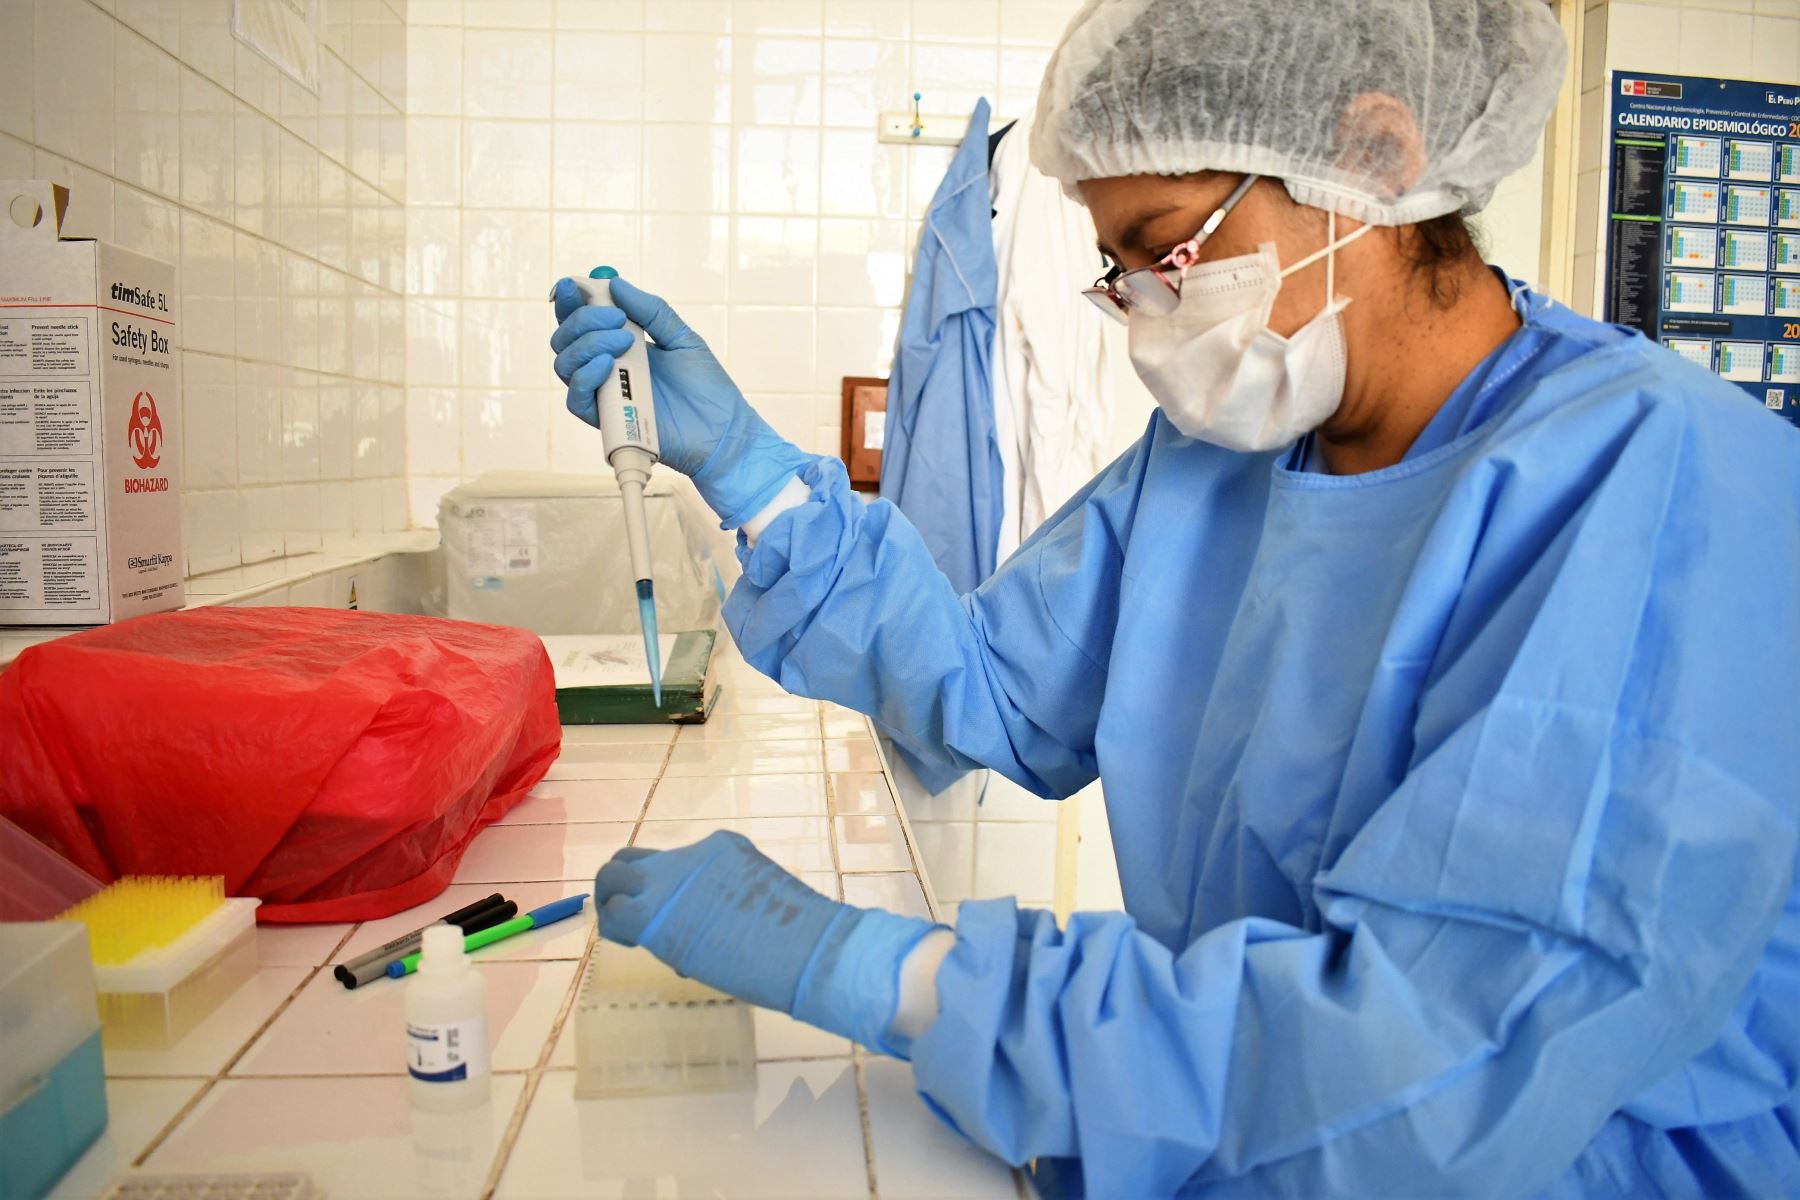 Laboratorio provisional permitirá procesar 200 pruebas rápidas de covid-19 en Chiclayo. ANDINA/Difusión